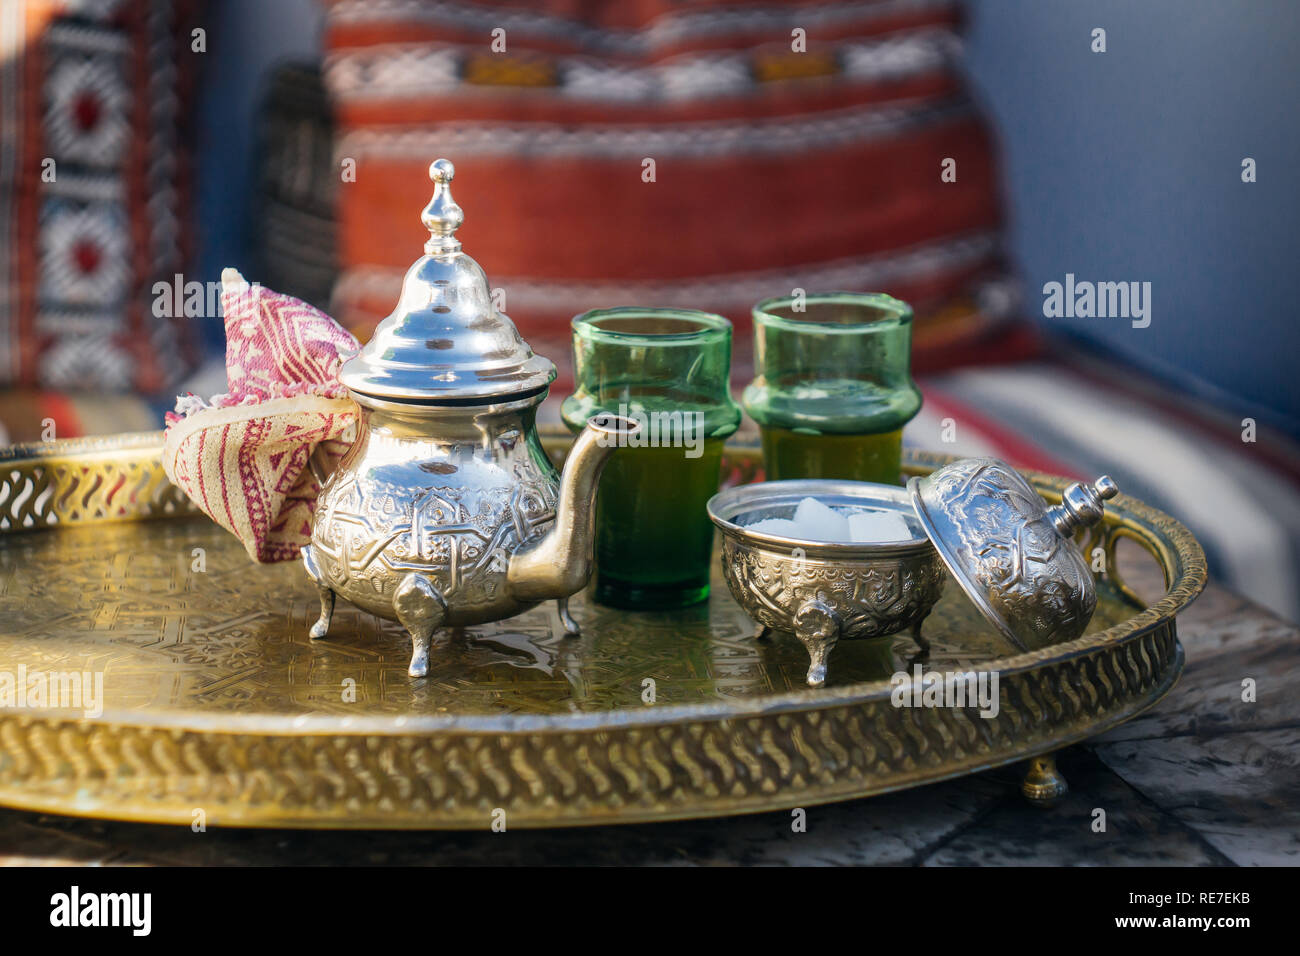 Arabischen Pfefferminztee (marokkanischen Pfefferminztee) Die nationalen heißen Getränk in den Nahen Osten und der muslimischen Welt. In einem speziellen Eisen Silber Teekanne mit Zucker serviert. Stockfoto